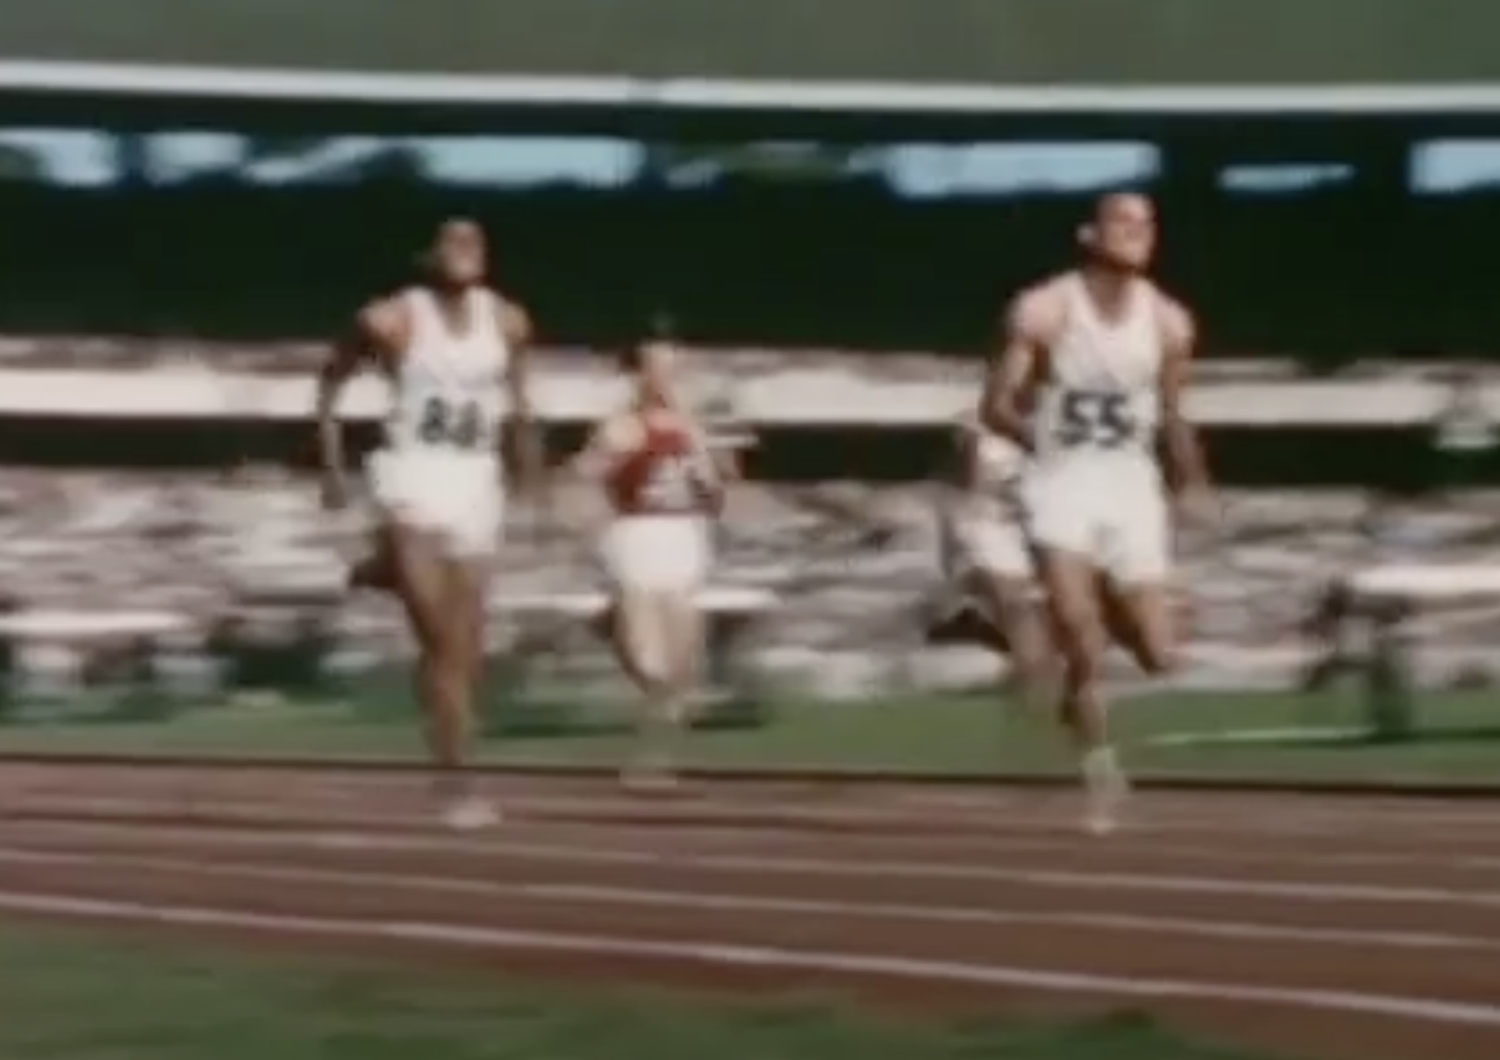 Atletica: morto Morrow, unico sprinter bianco con 3 ori olimpici